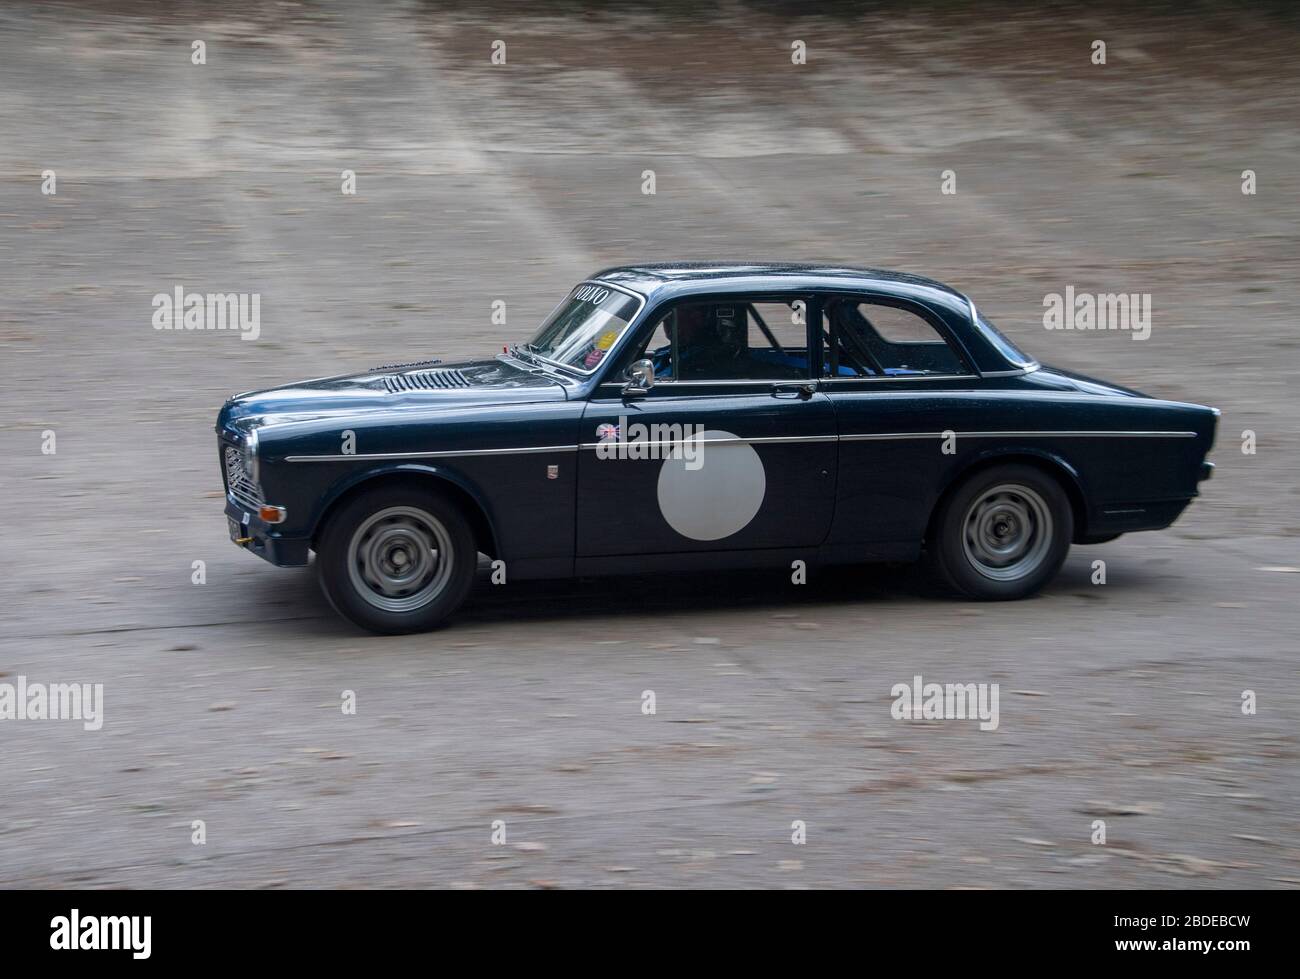 Volvo motorsport -Fotos und -Bildmaterial in hoher Auflösung – Alamy